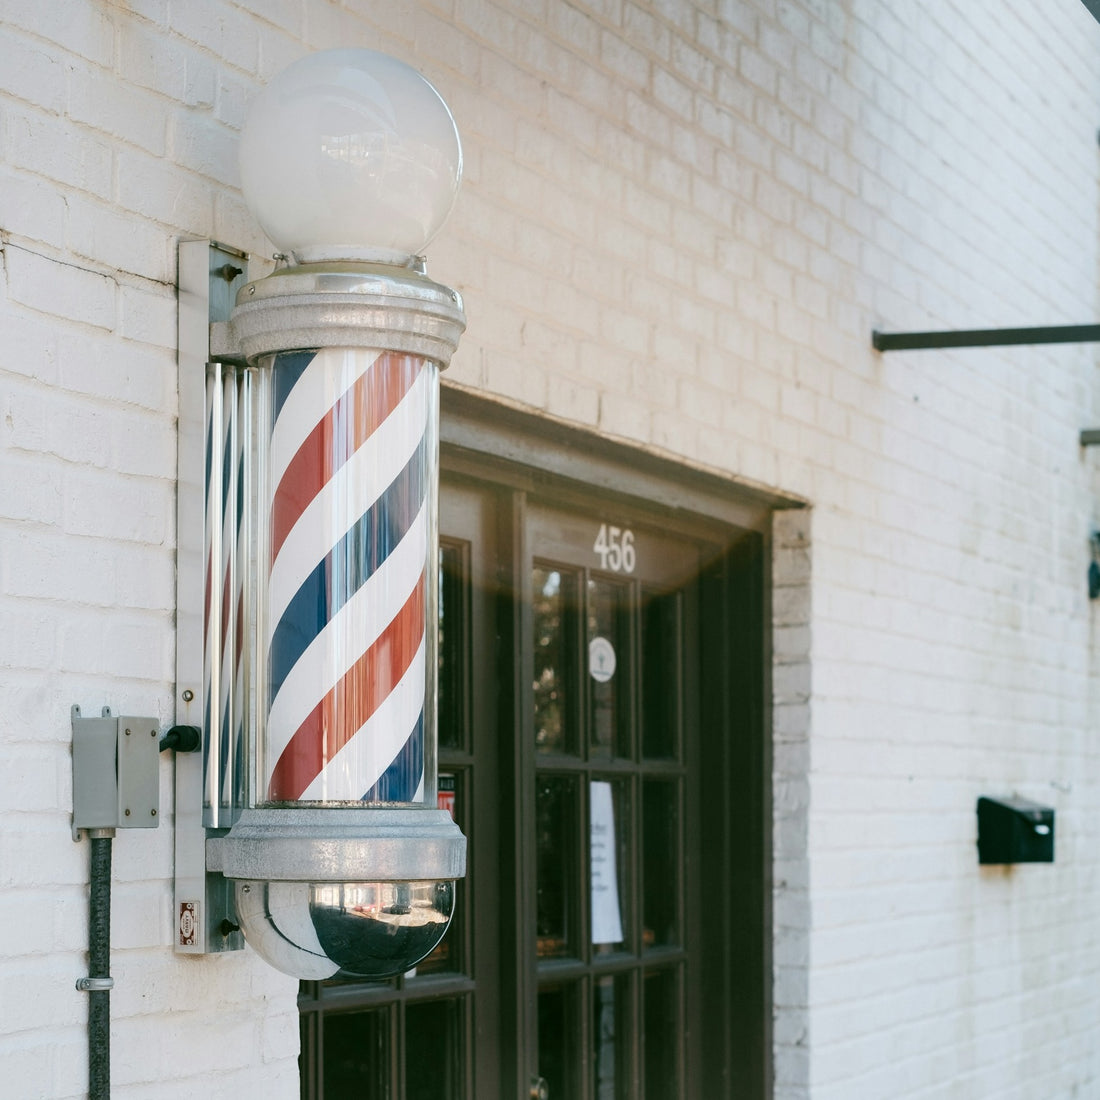  Shop by Fragrance: Barbershop